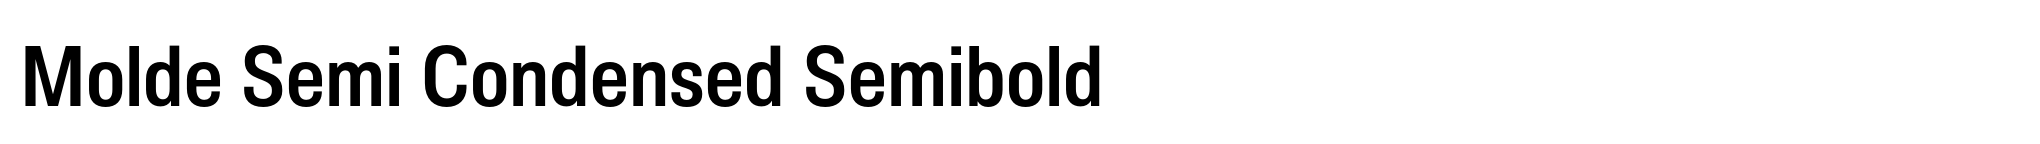 Molde Semi Condensed Semibold image